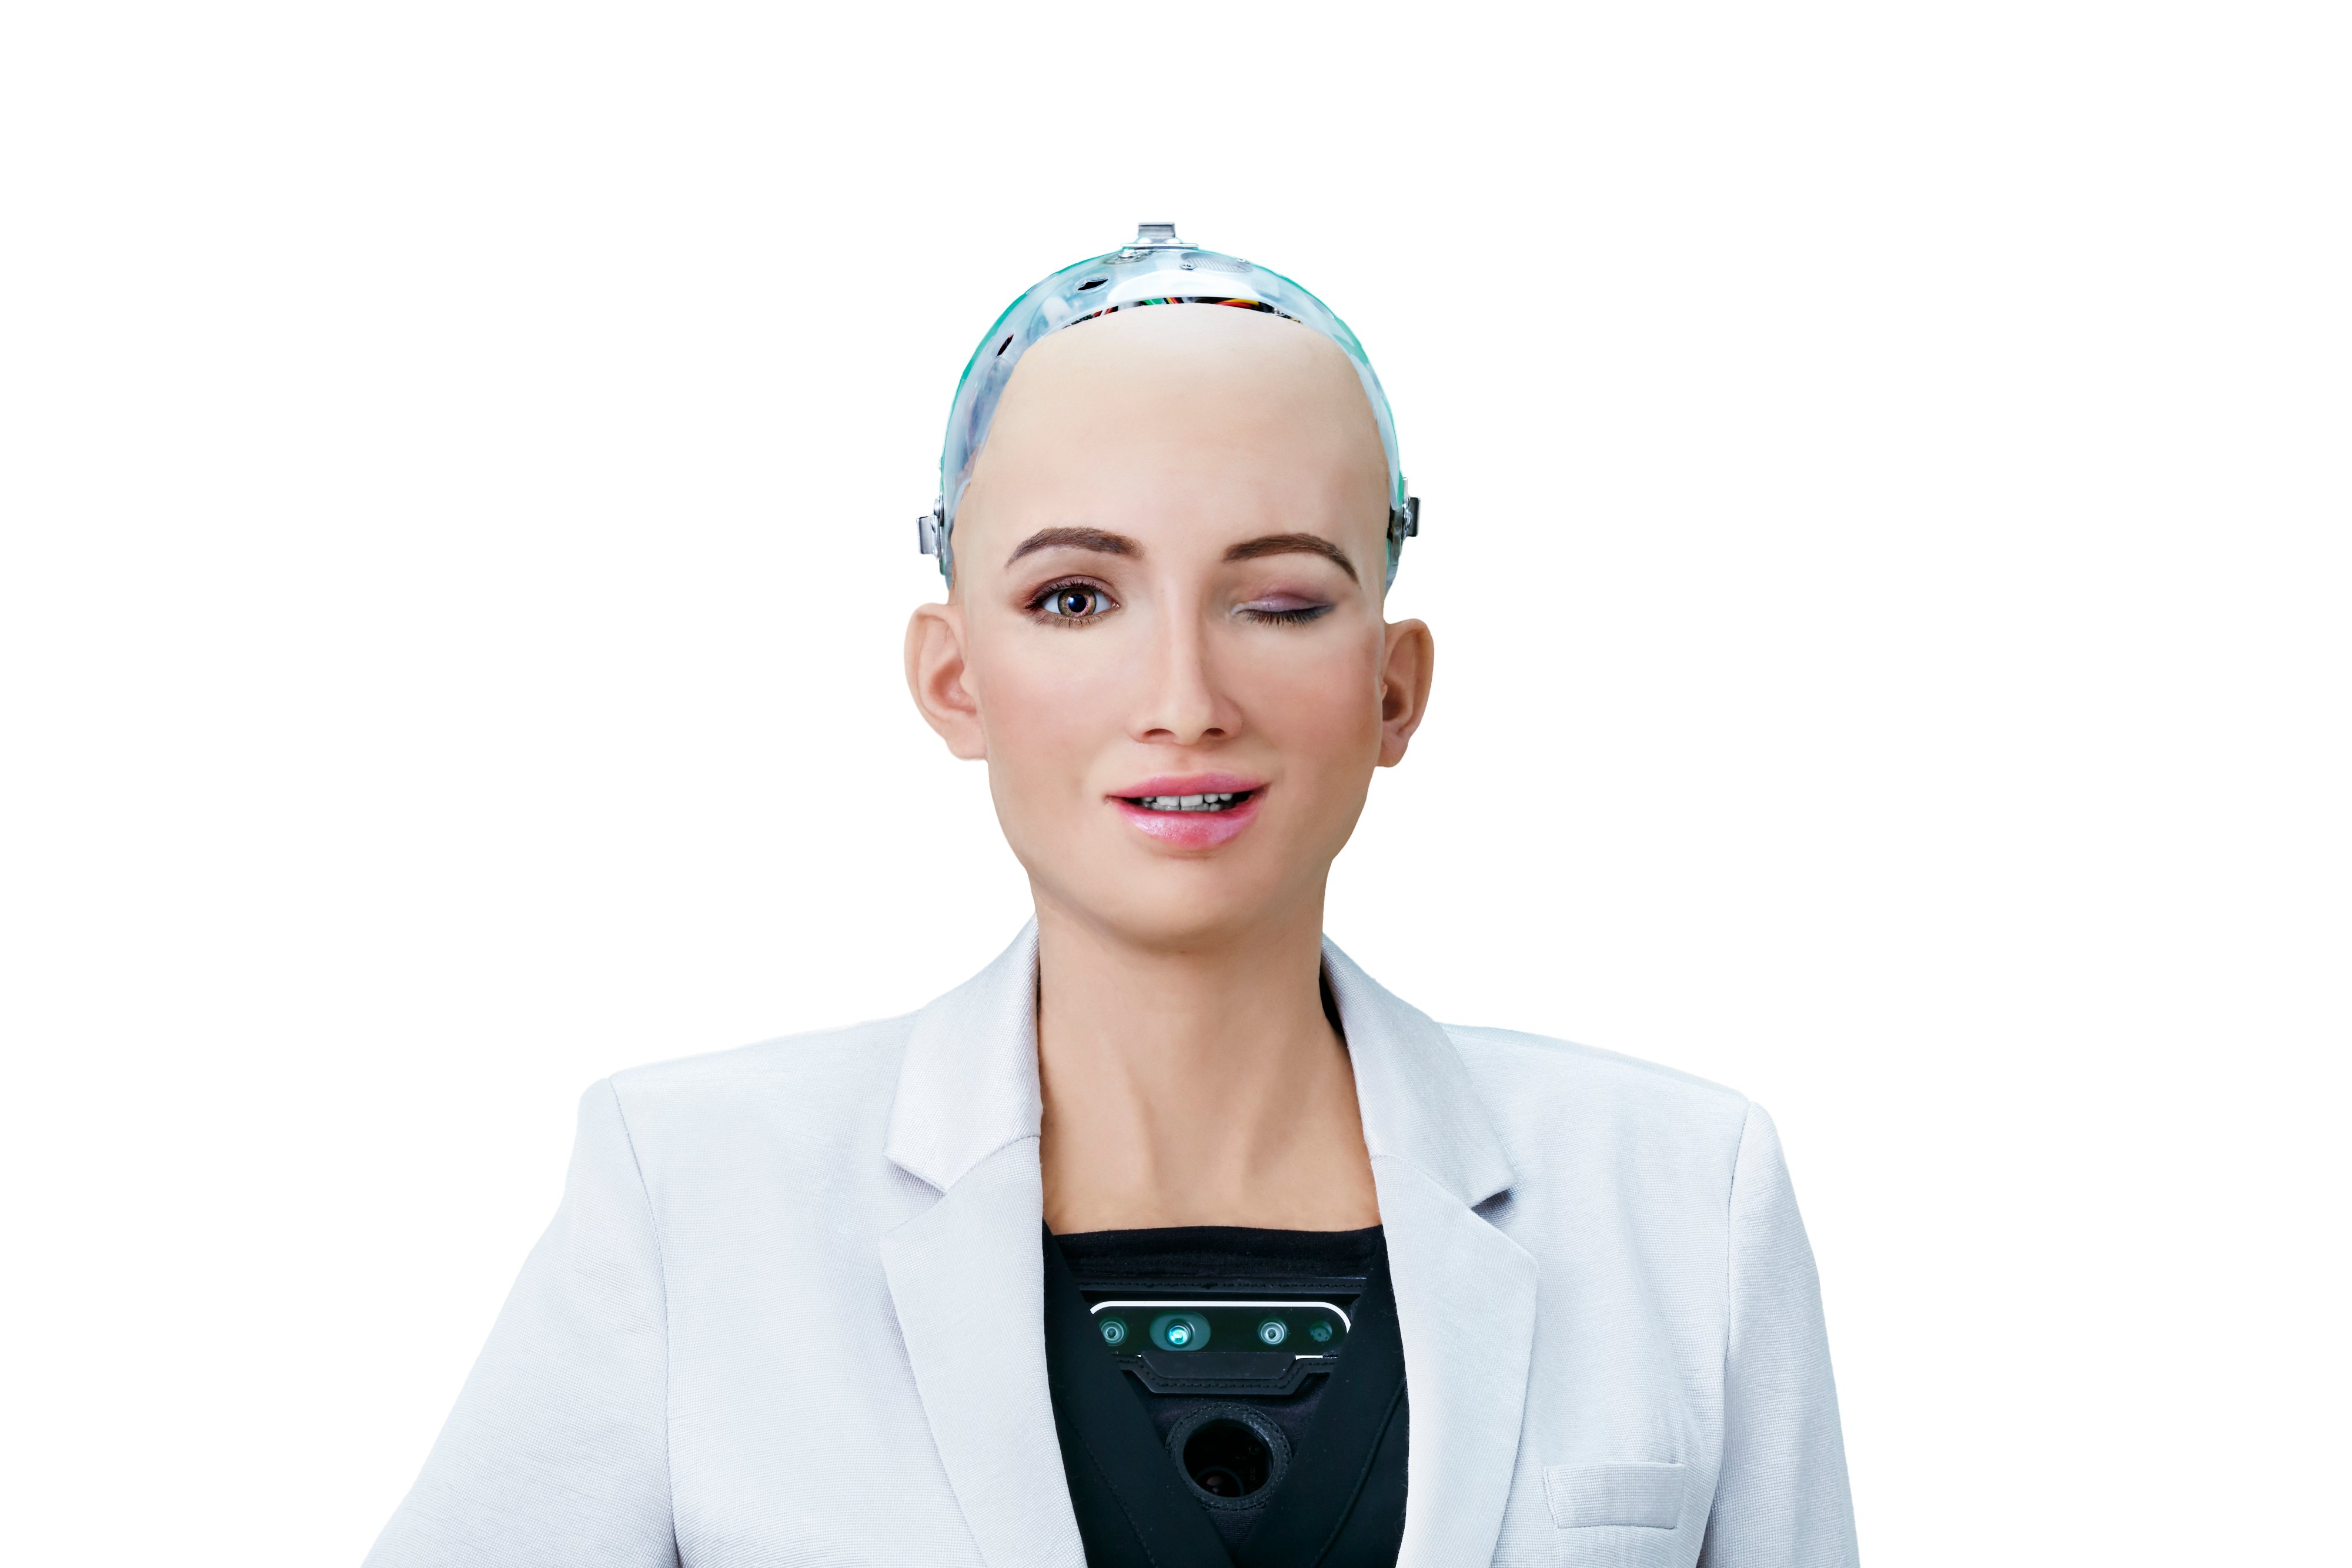 Sophia the humanoid robot